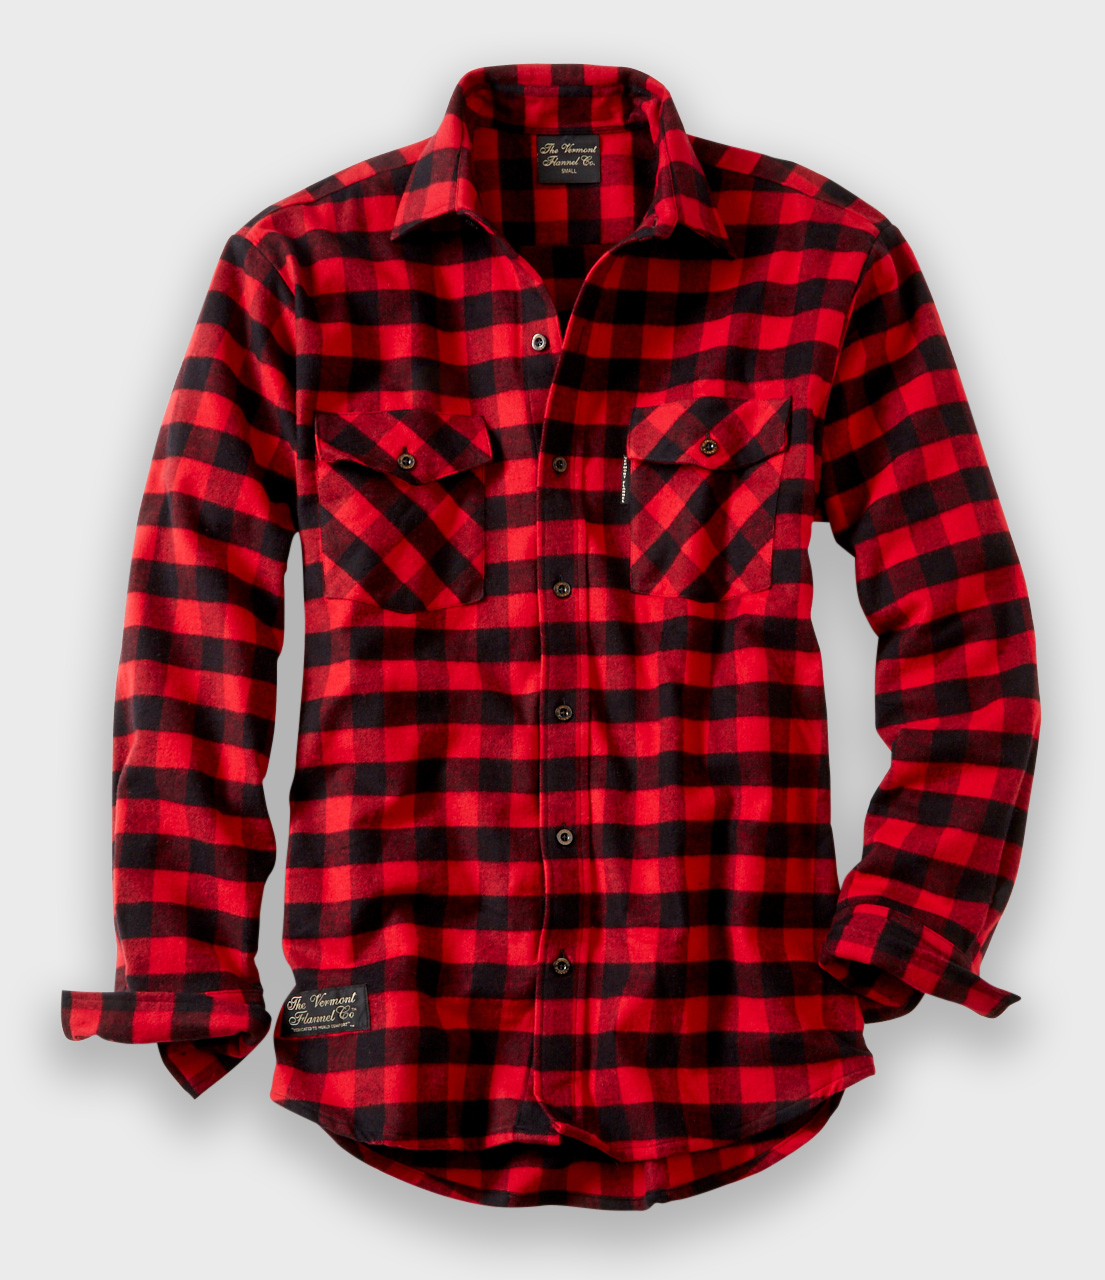 fattigdom entanglement at tilbagetrække Men's Flannel Shirt | Handcrafted USA - The Vermont Flannel Co.